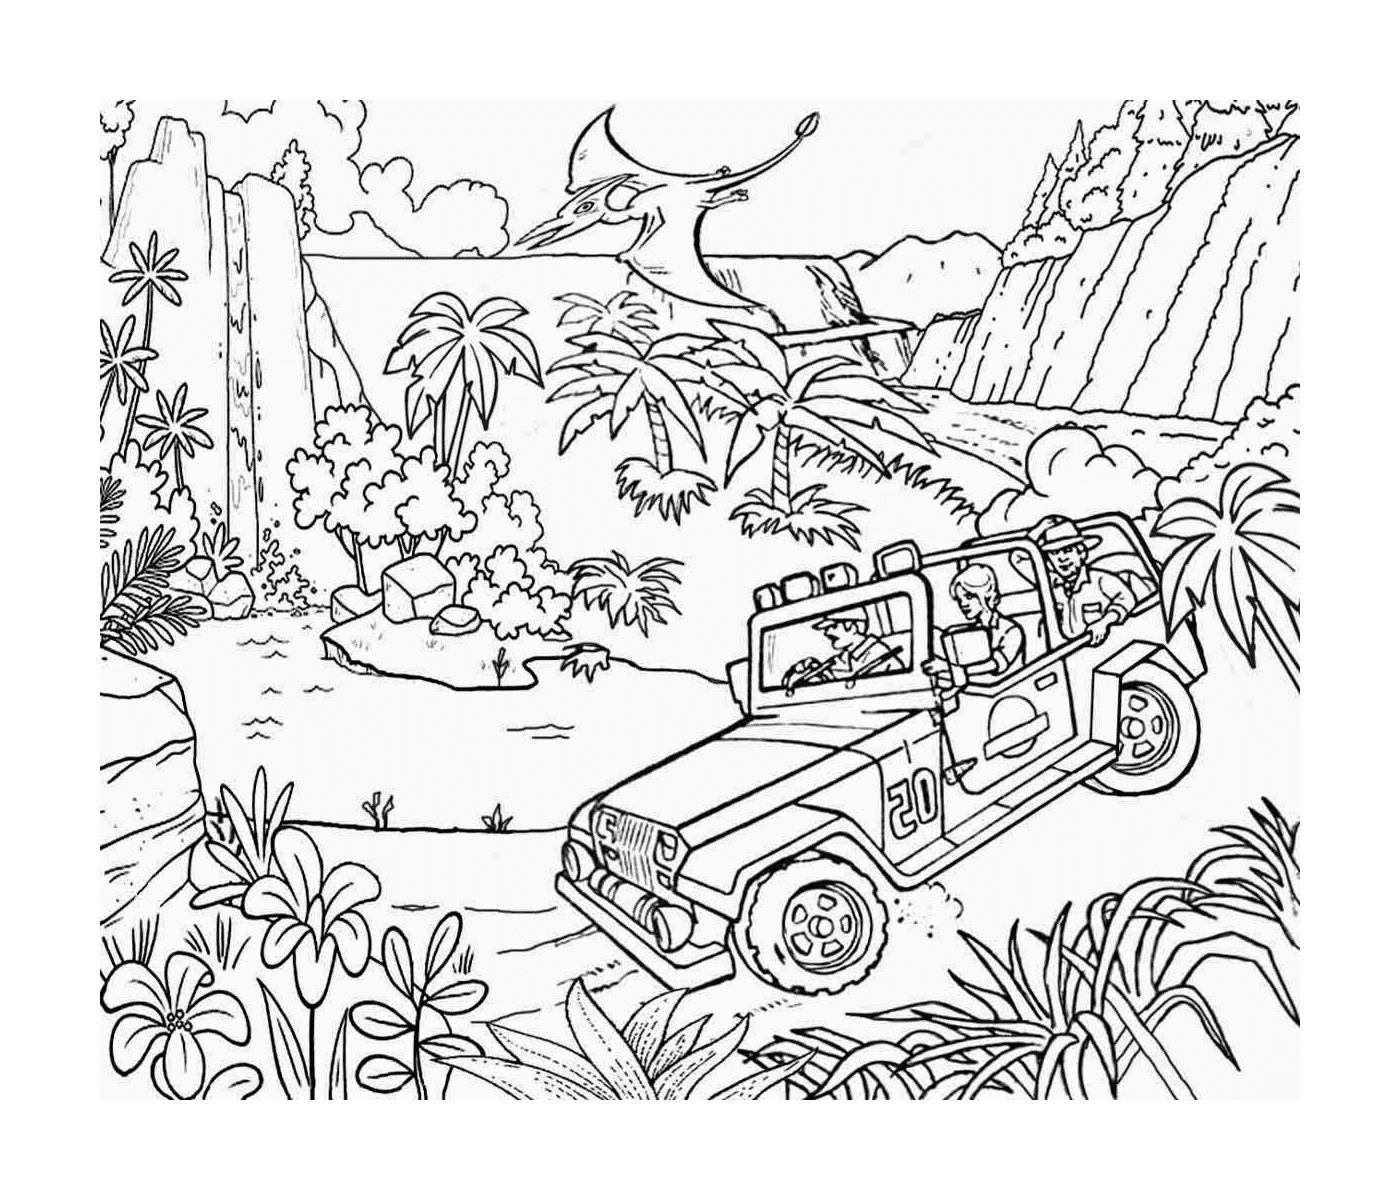  吉普车在侏罗纪奇公园的丛林里 一场持续的冒险 